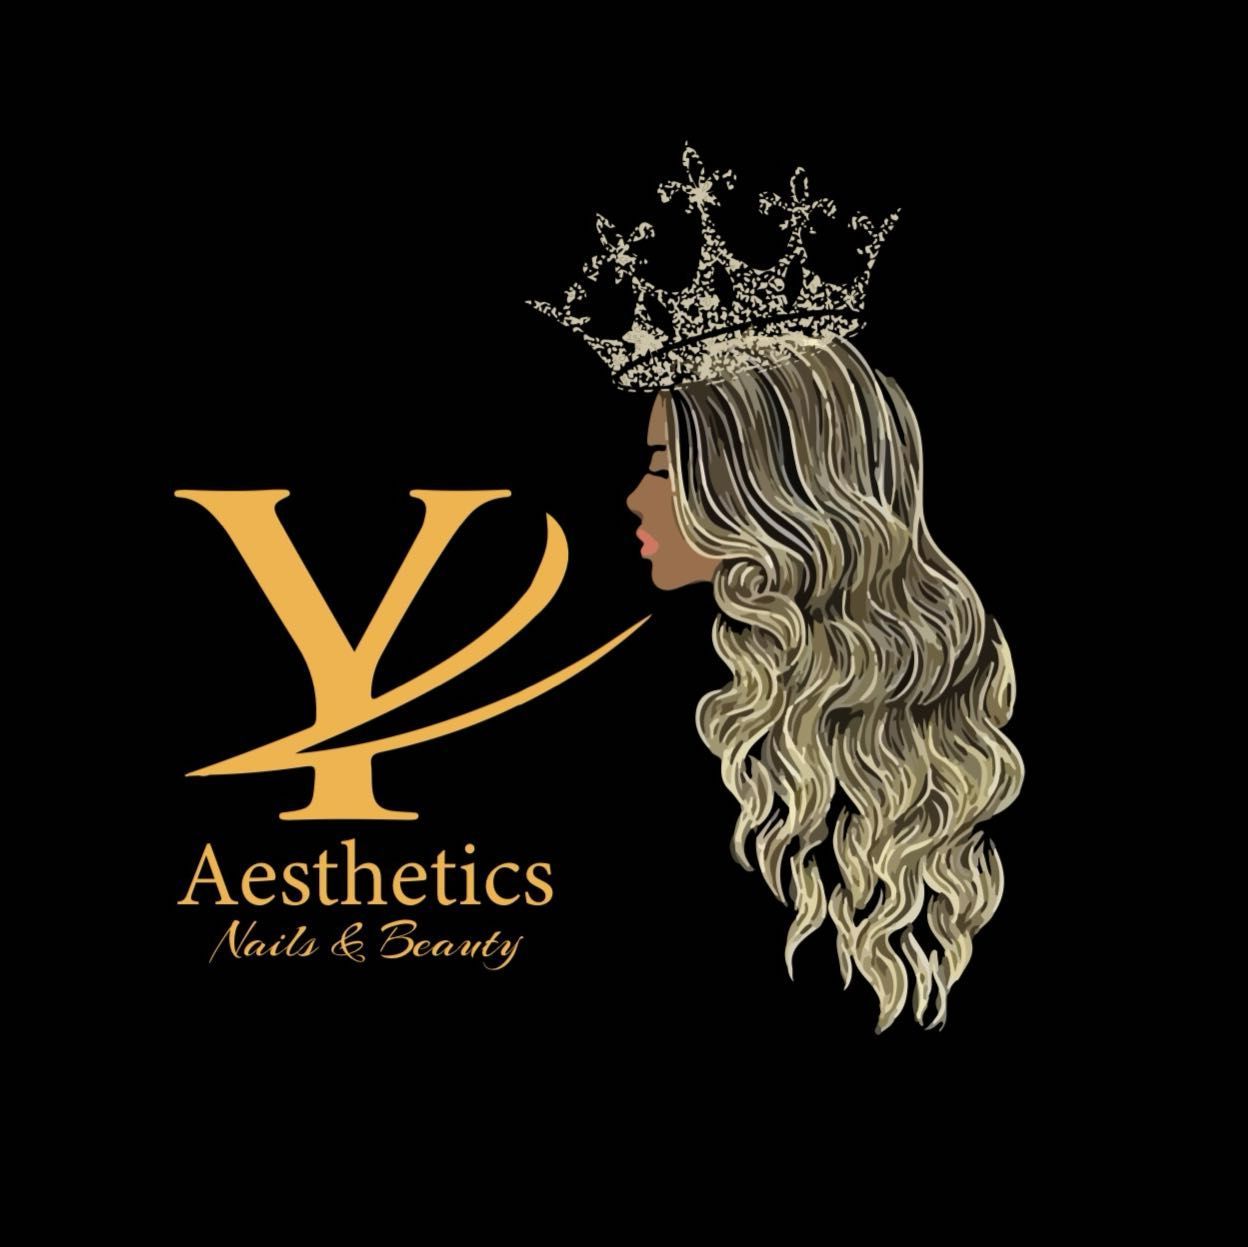 Yasmin Aesthetic, Nail&beauty, 922 Springfield Road, G31 4HE, Glasgow